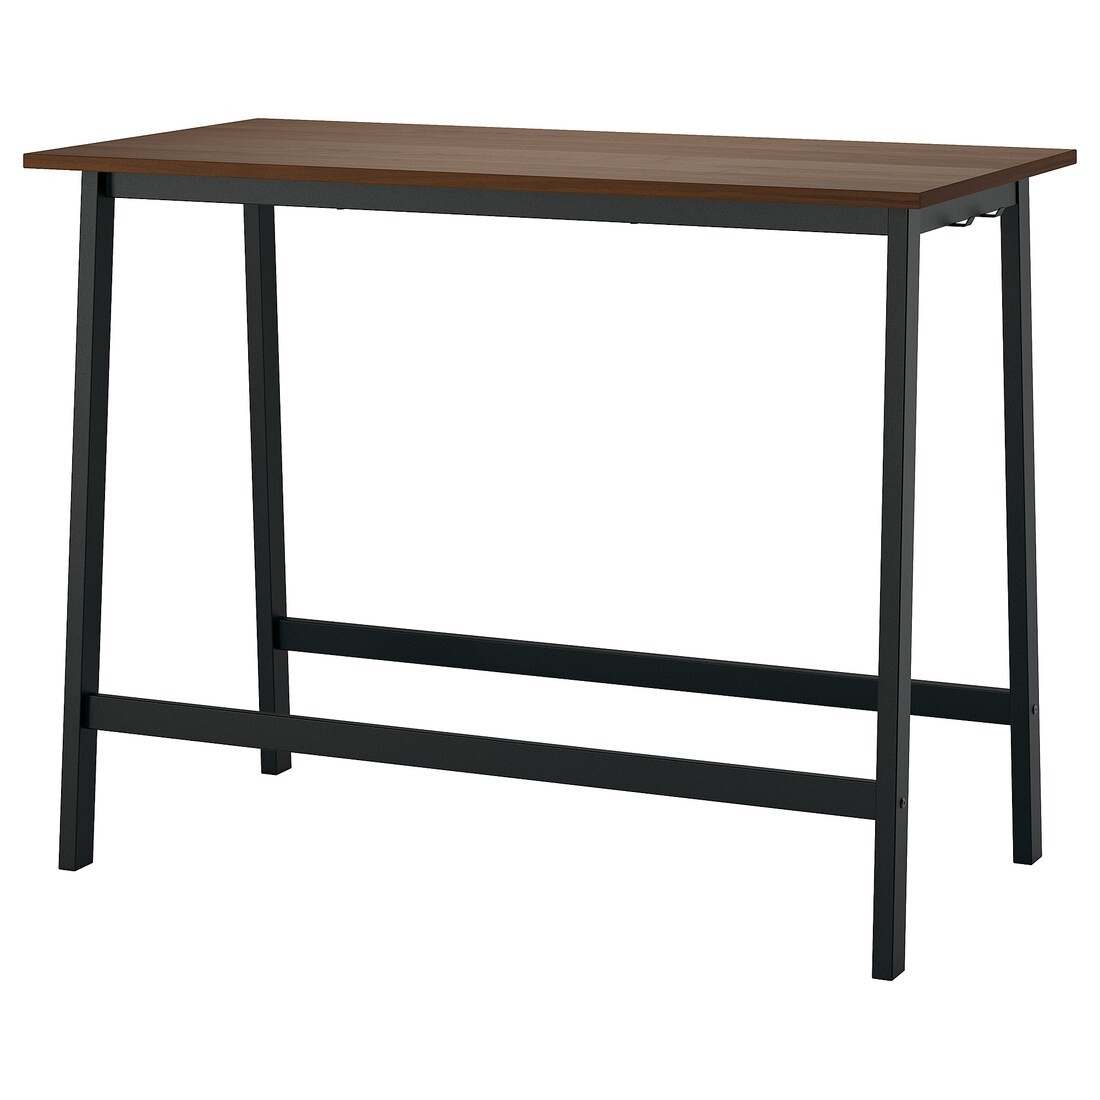 MITTZON конференц-стол, орех/черный, 140x68x105 см